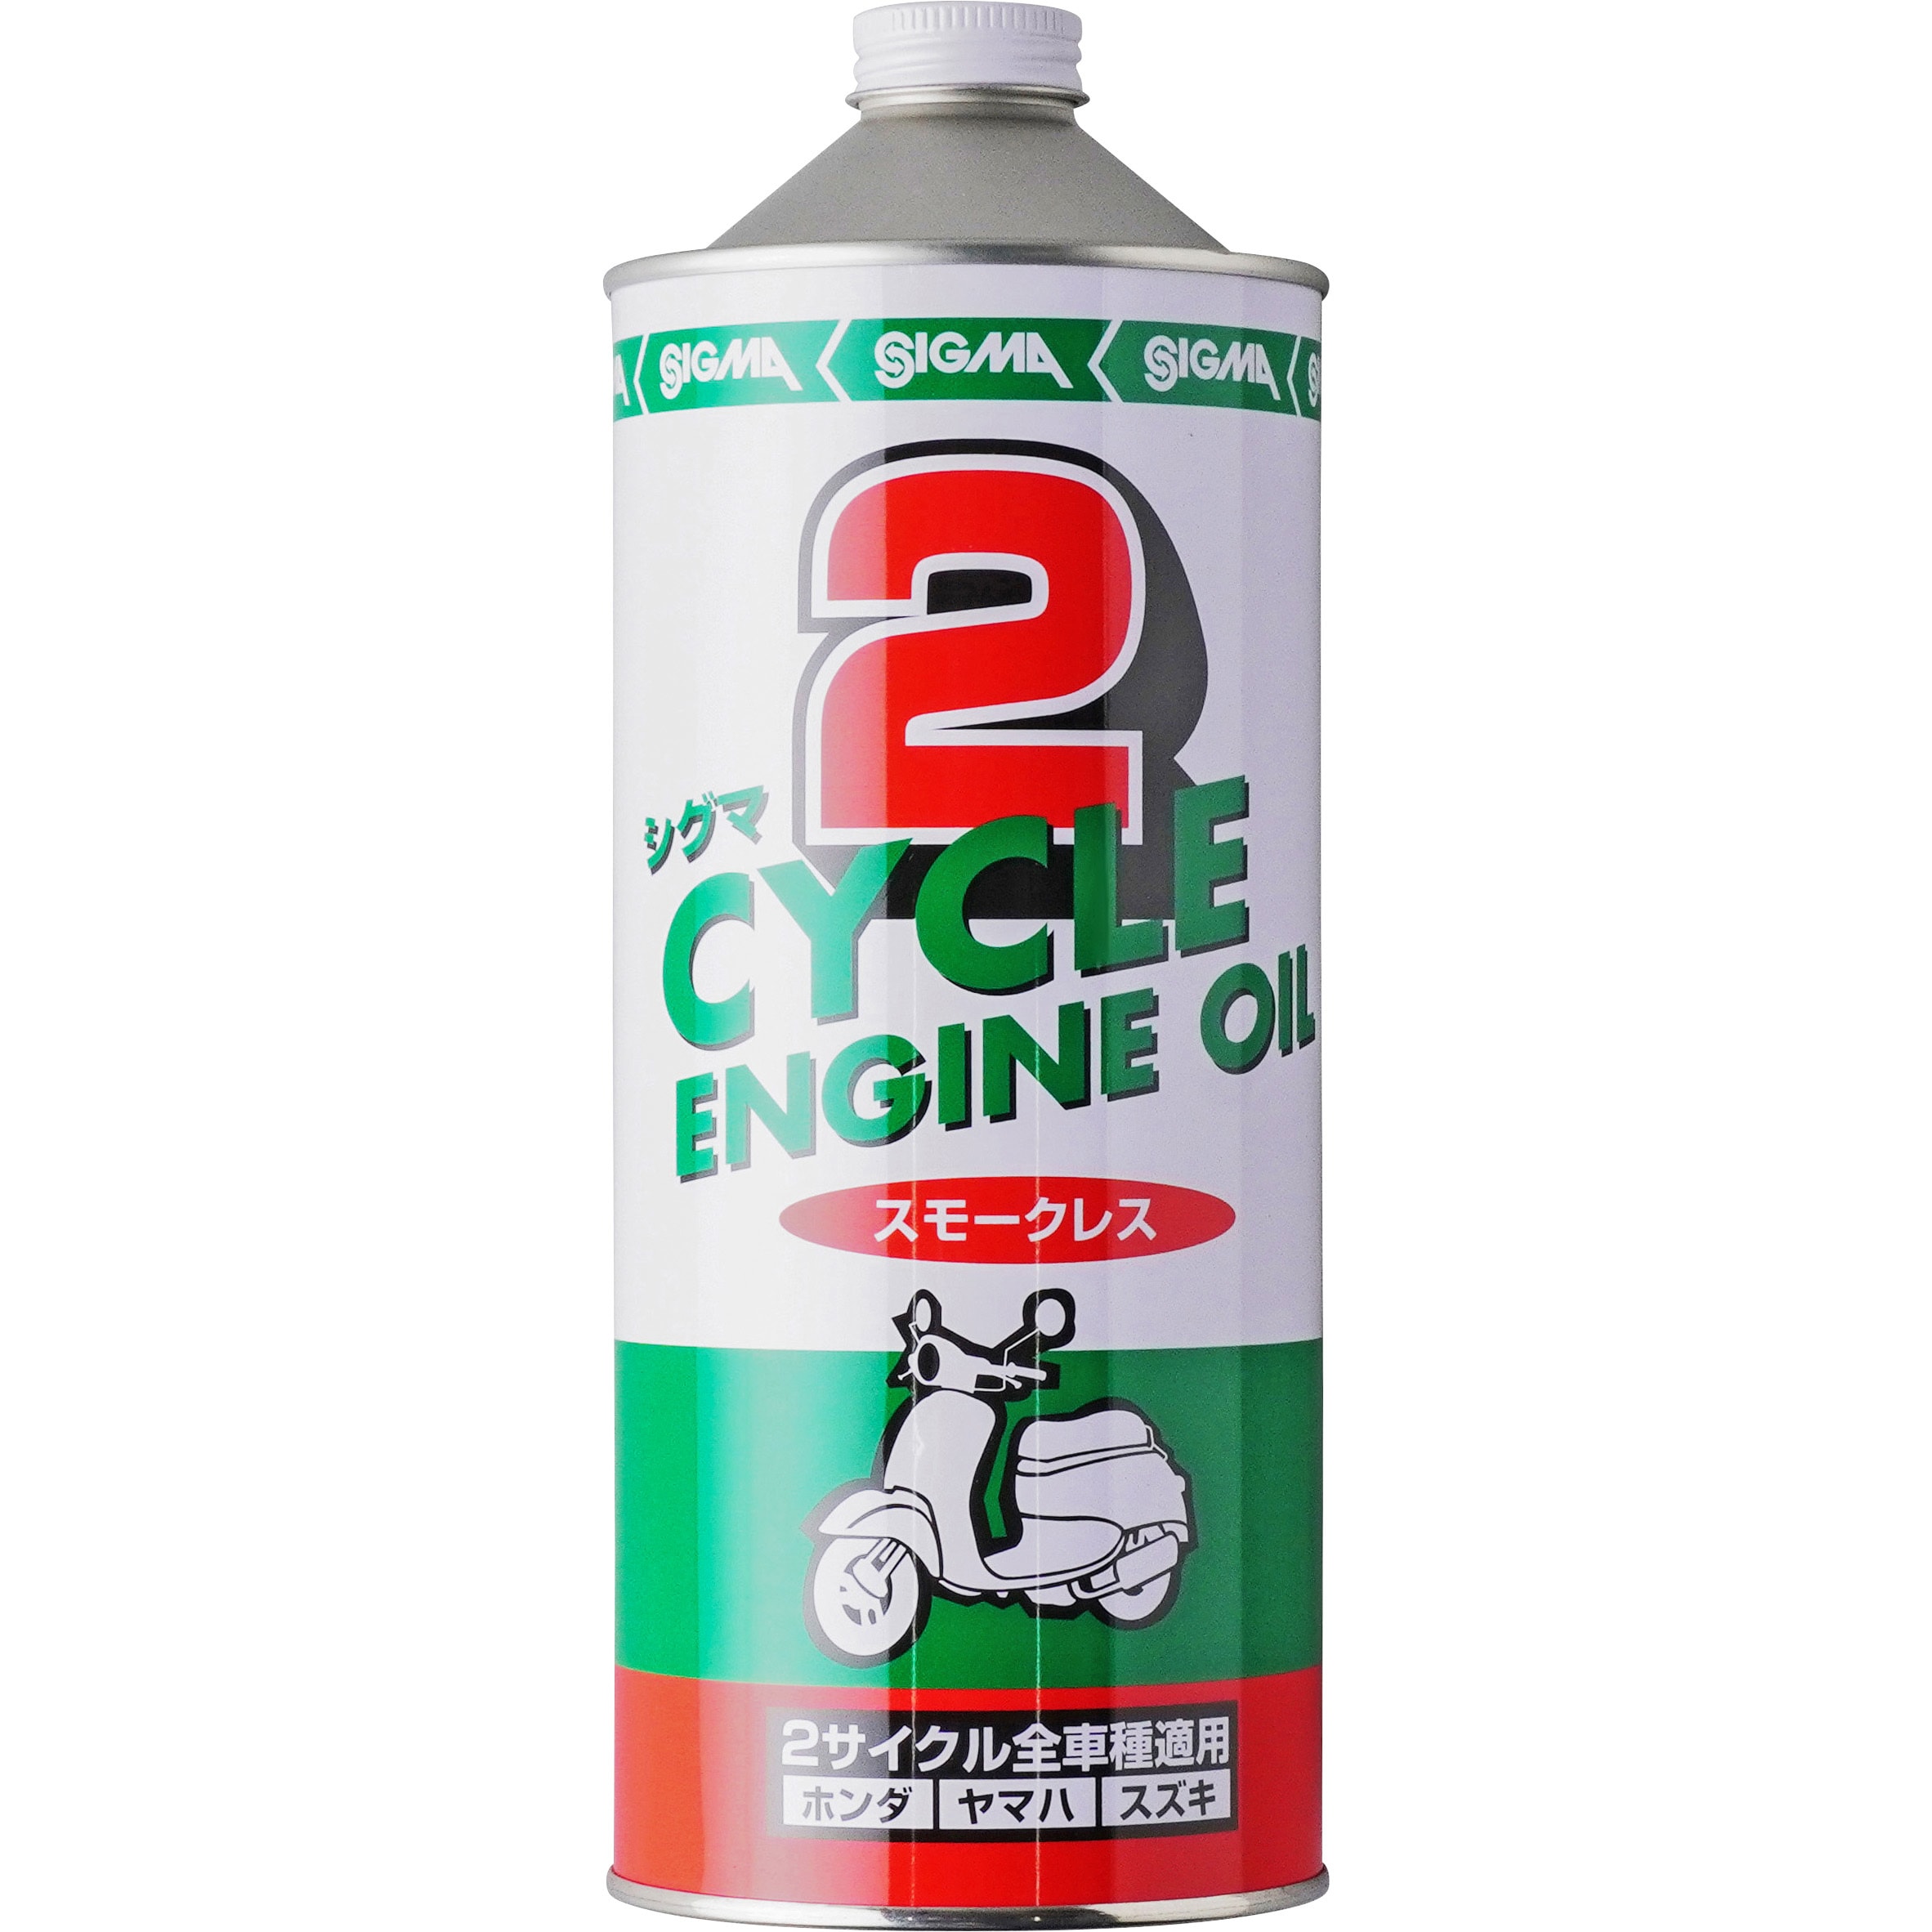 2サイクルエンジンオイル(スモークレス) 1缶(1L) SIGMA(シグマ) 【通販 